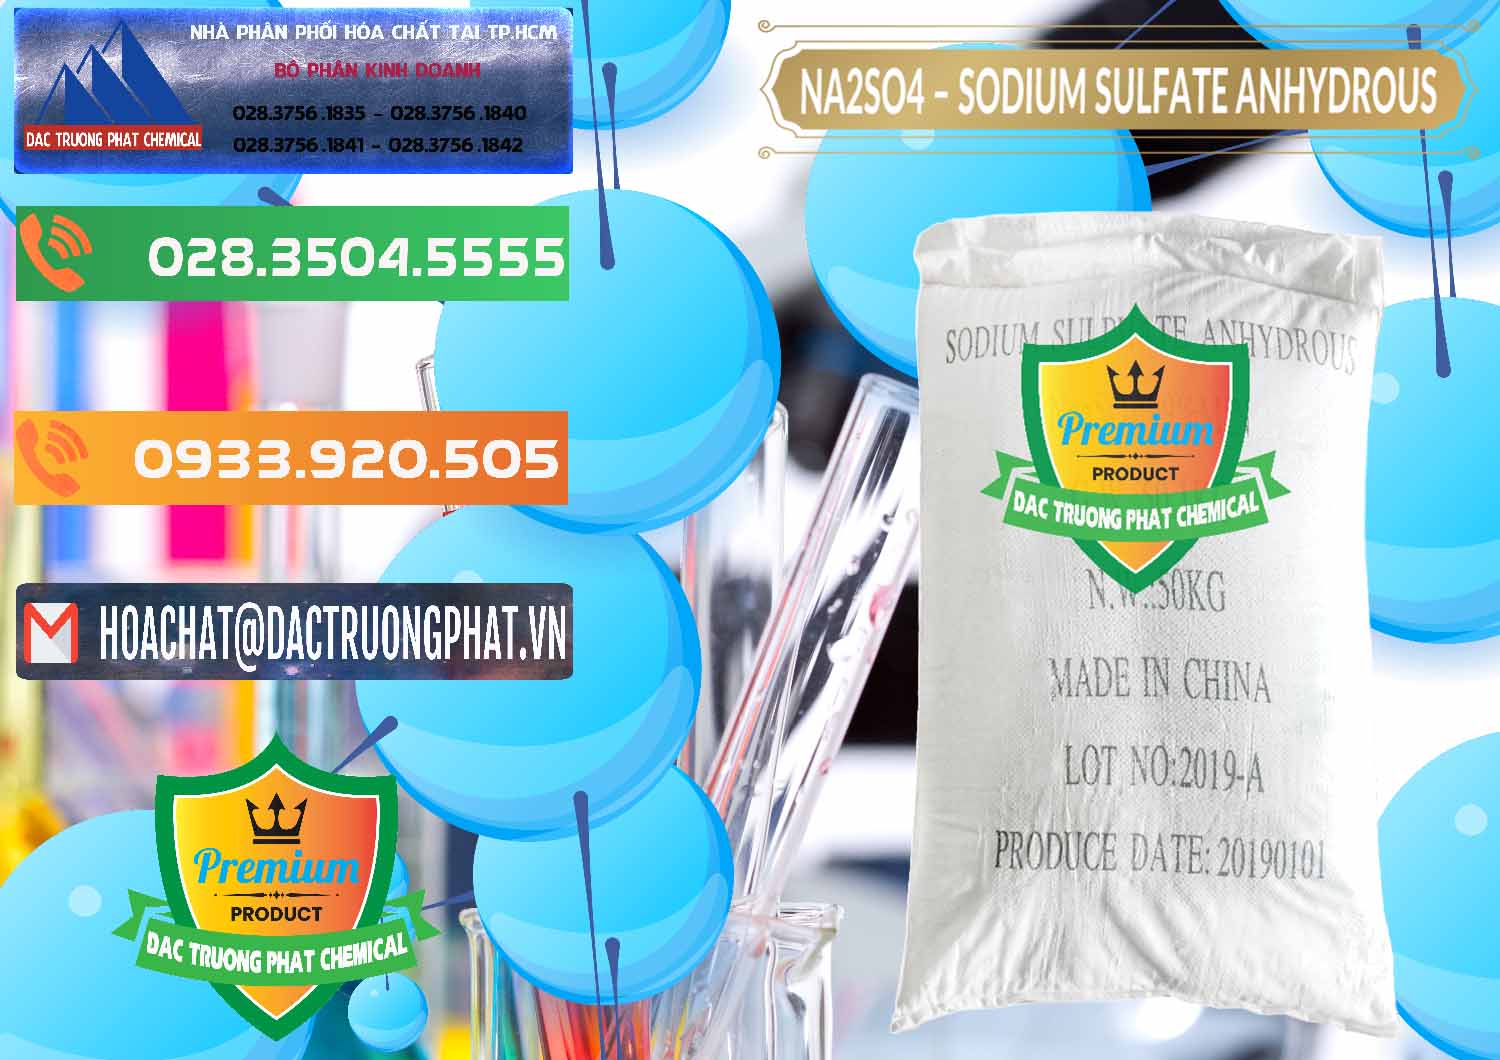 Cty kinh doanh _ bán Sodium Sulphate - Muối Sunfat Na2SO4 PH 6-8 Trung Quốc China - 0099 - Cty bán ( phân phối ) hóa chất tại TP.HCM - hoachatxulynuoc.com.vn